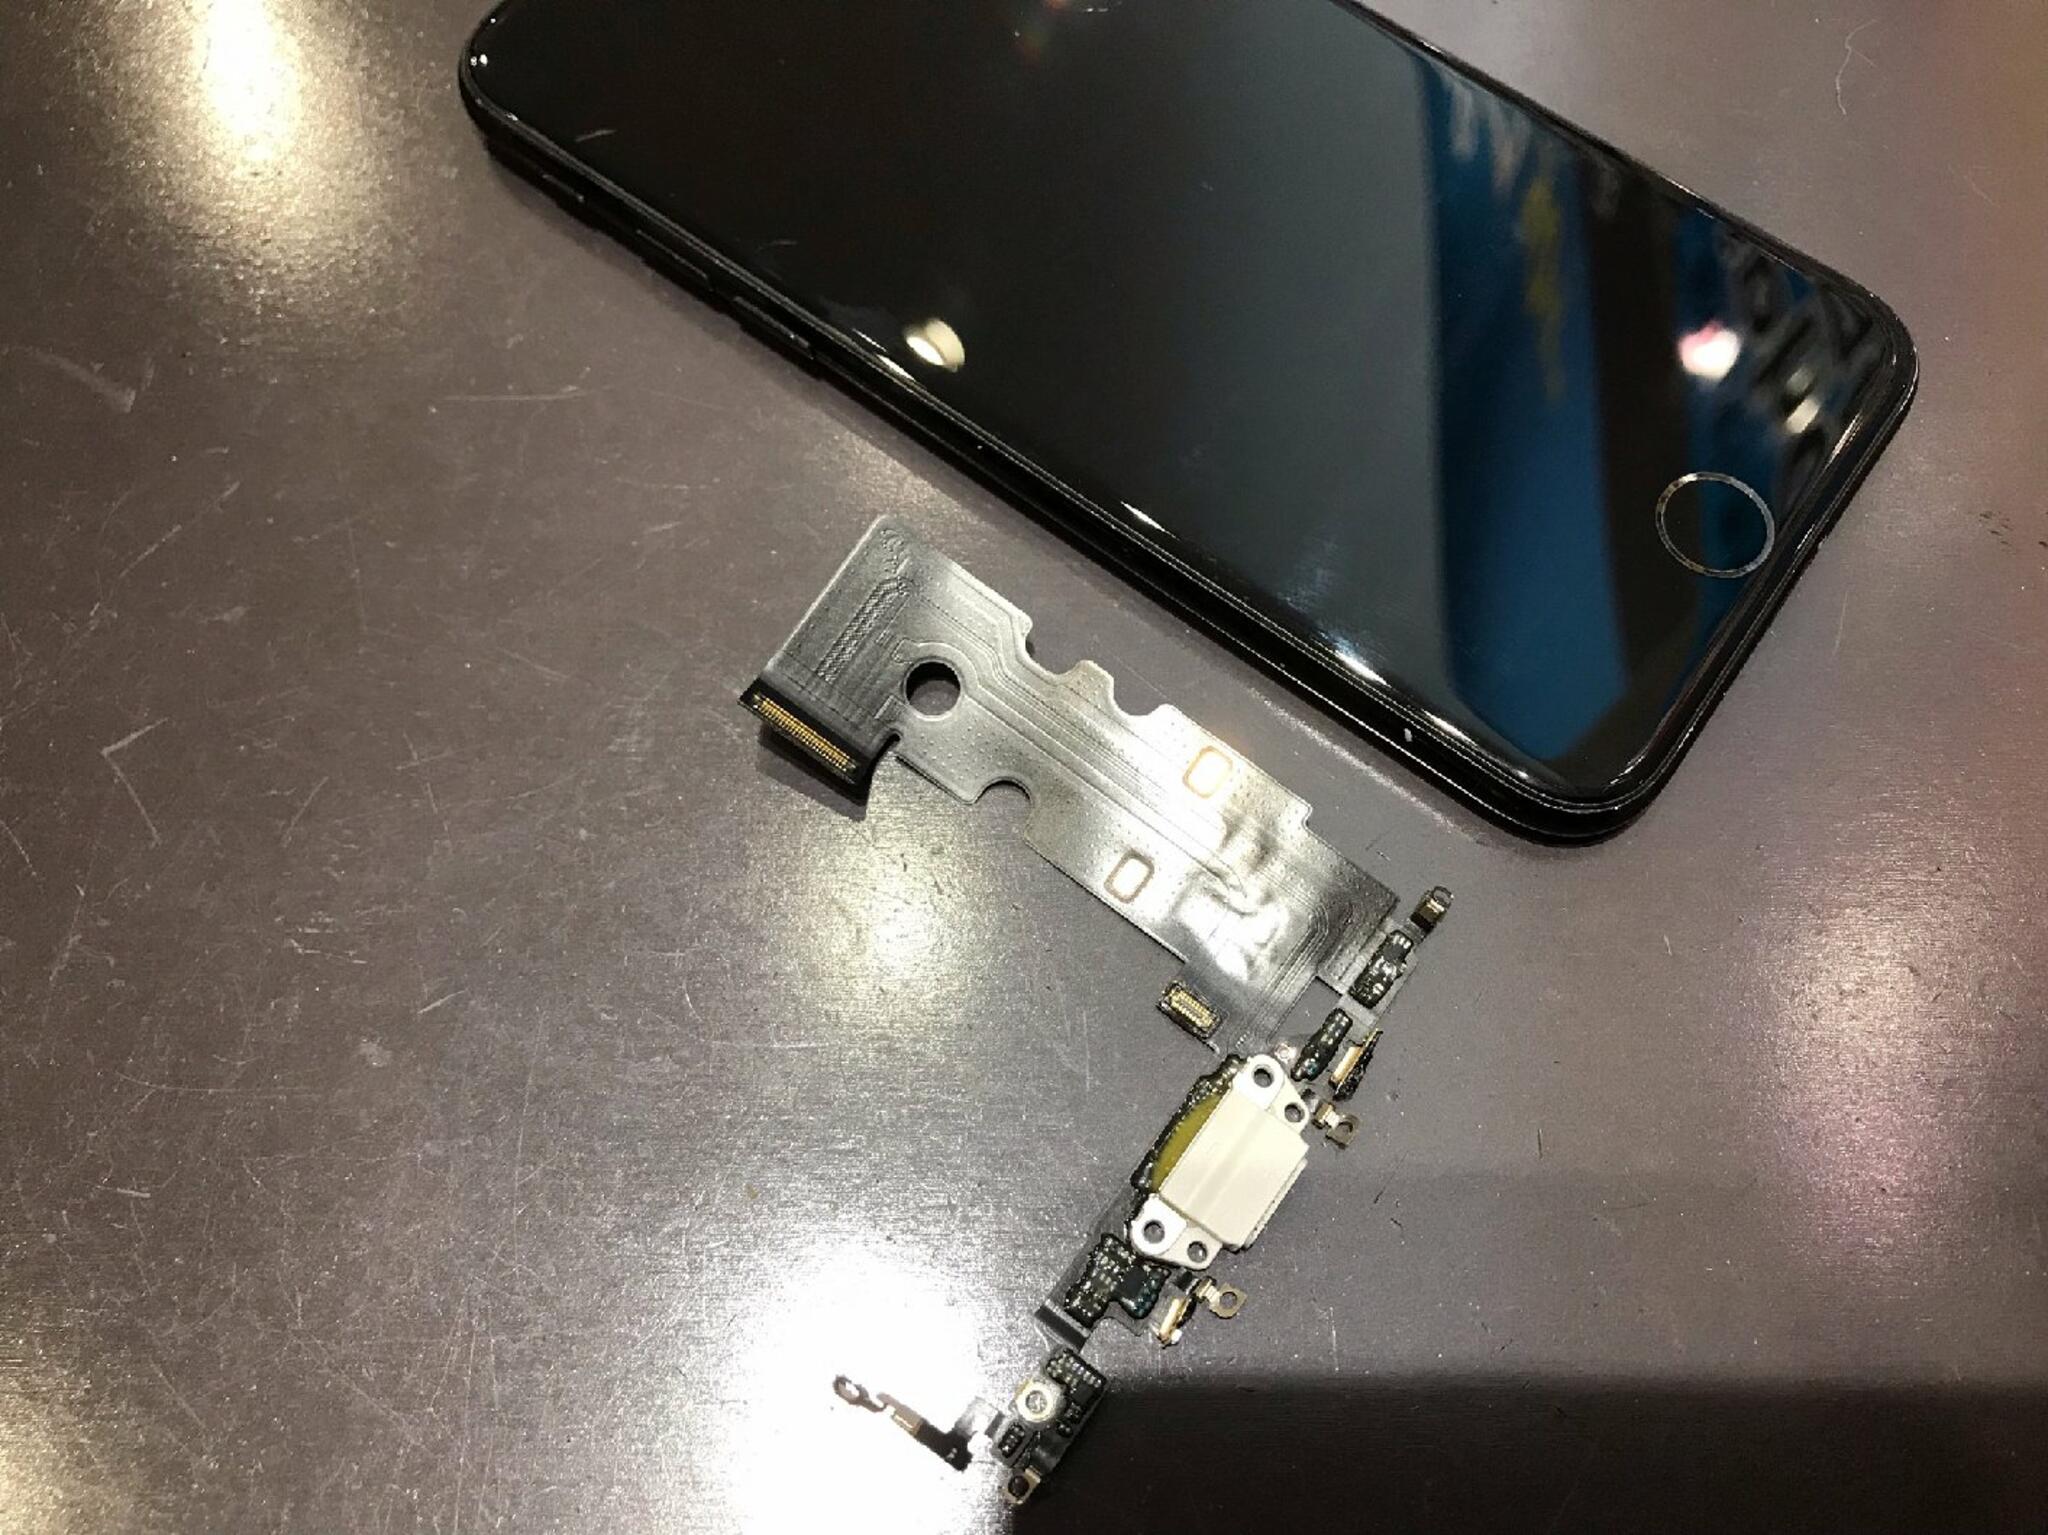 iPhone・iPad・Switch修理店 スマートクール イオンモール広島祇園店からのお知らせ(コネクタ の中で詰まったら・・・)に関する写真